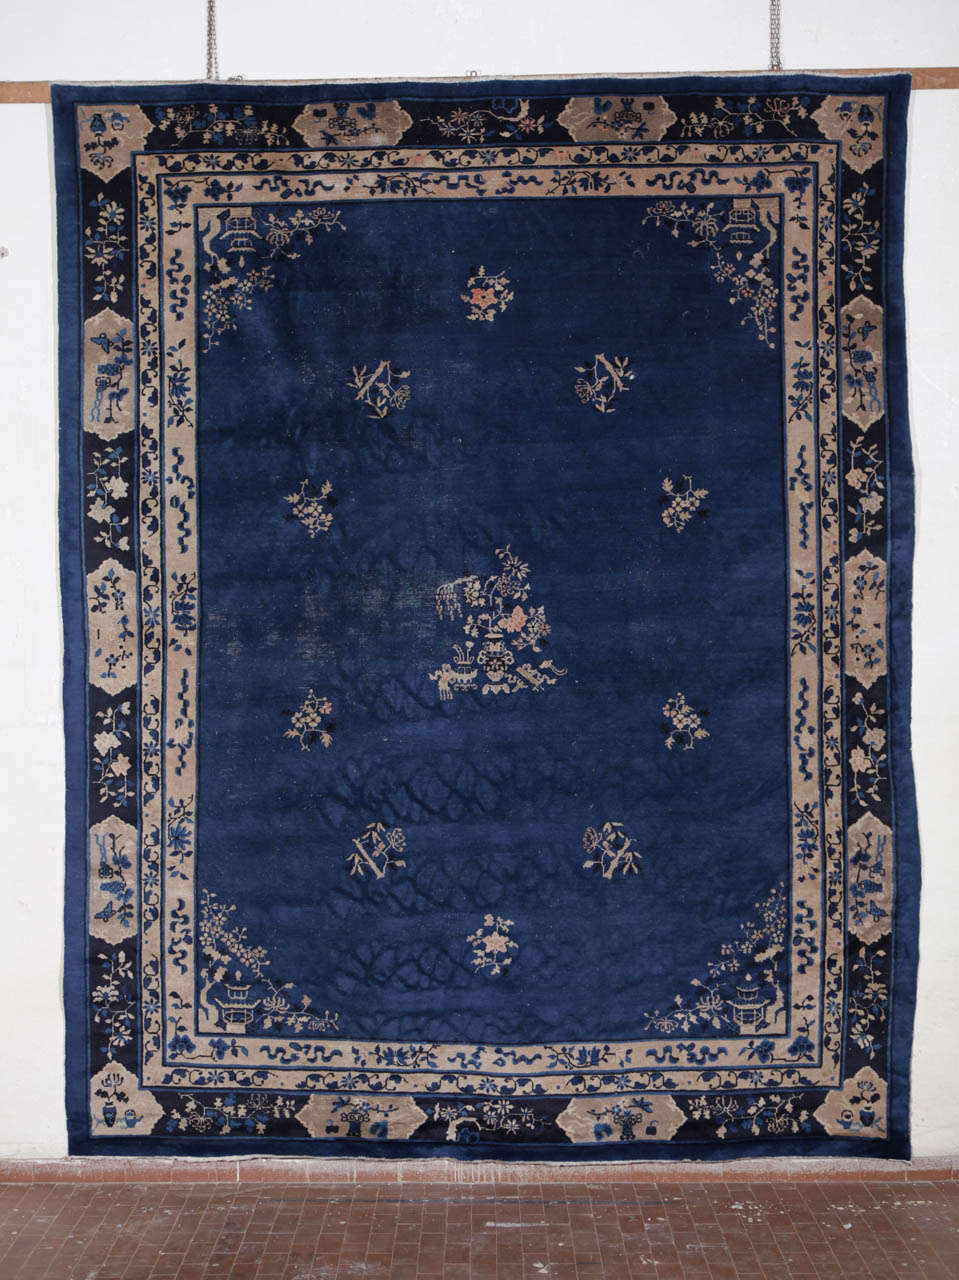 Ein feiner indigoblauer Peking-Teppich aus dem frühen 20.
Maße: cm 350 x 280.